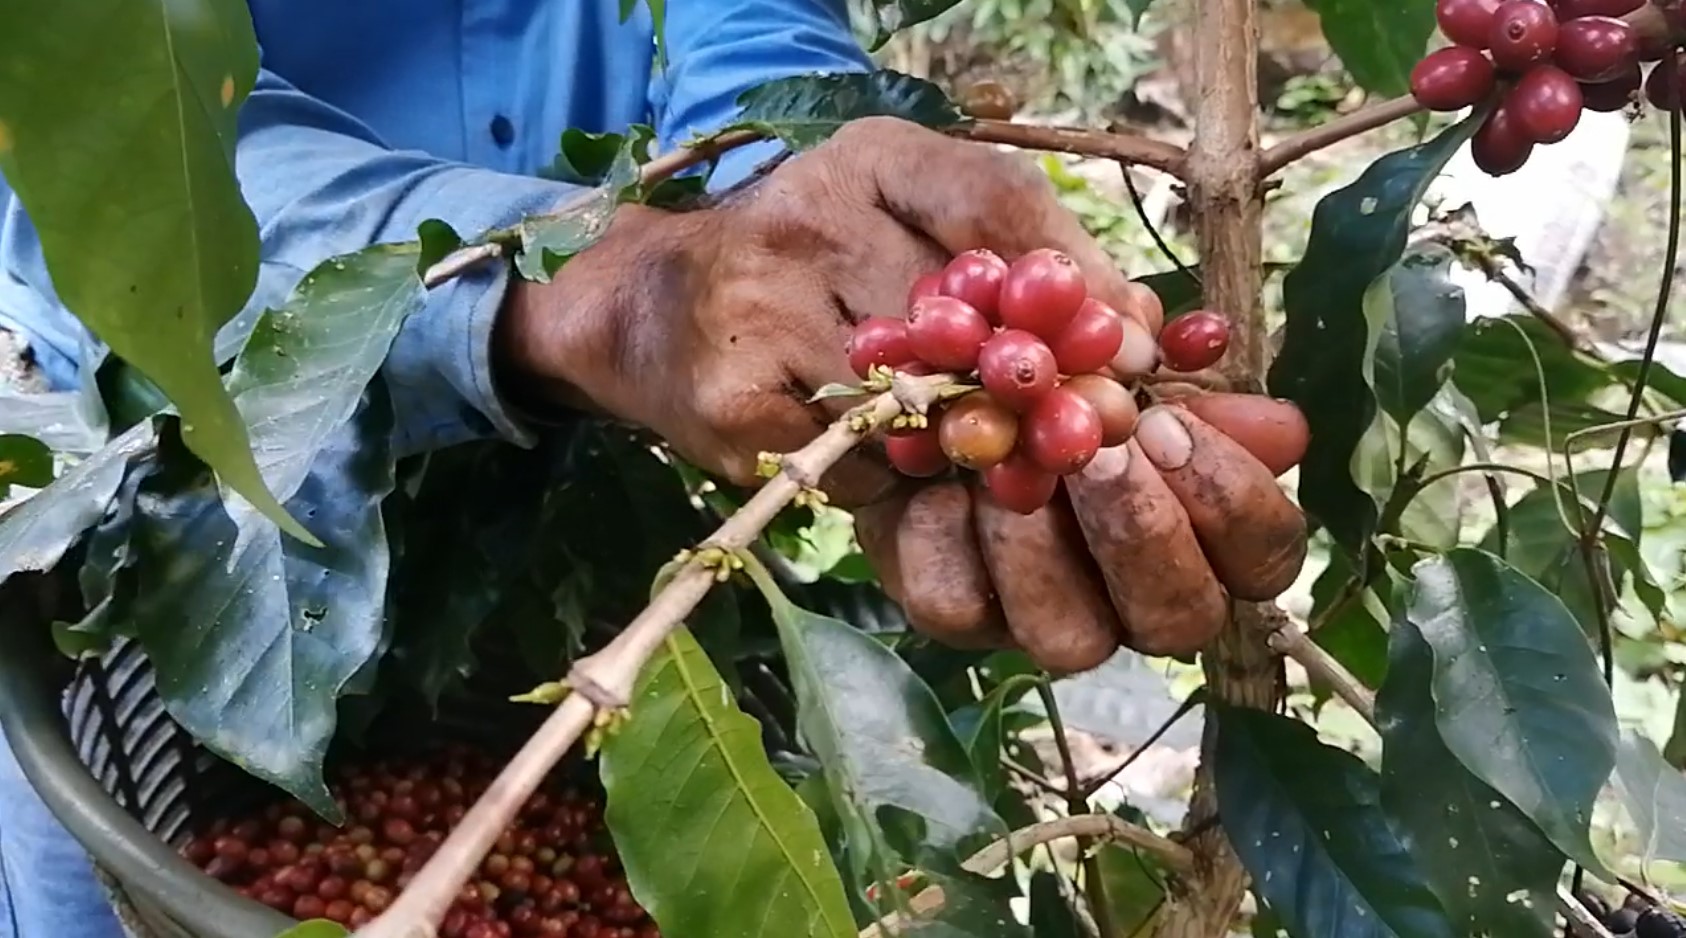 Coffee tree Harvesting - Coffee Berries Picking